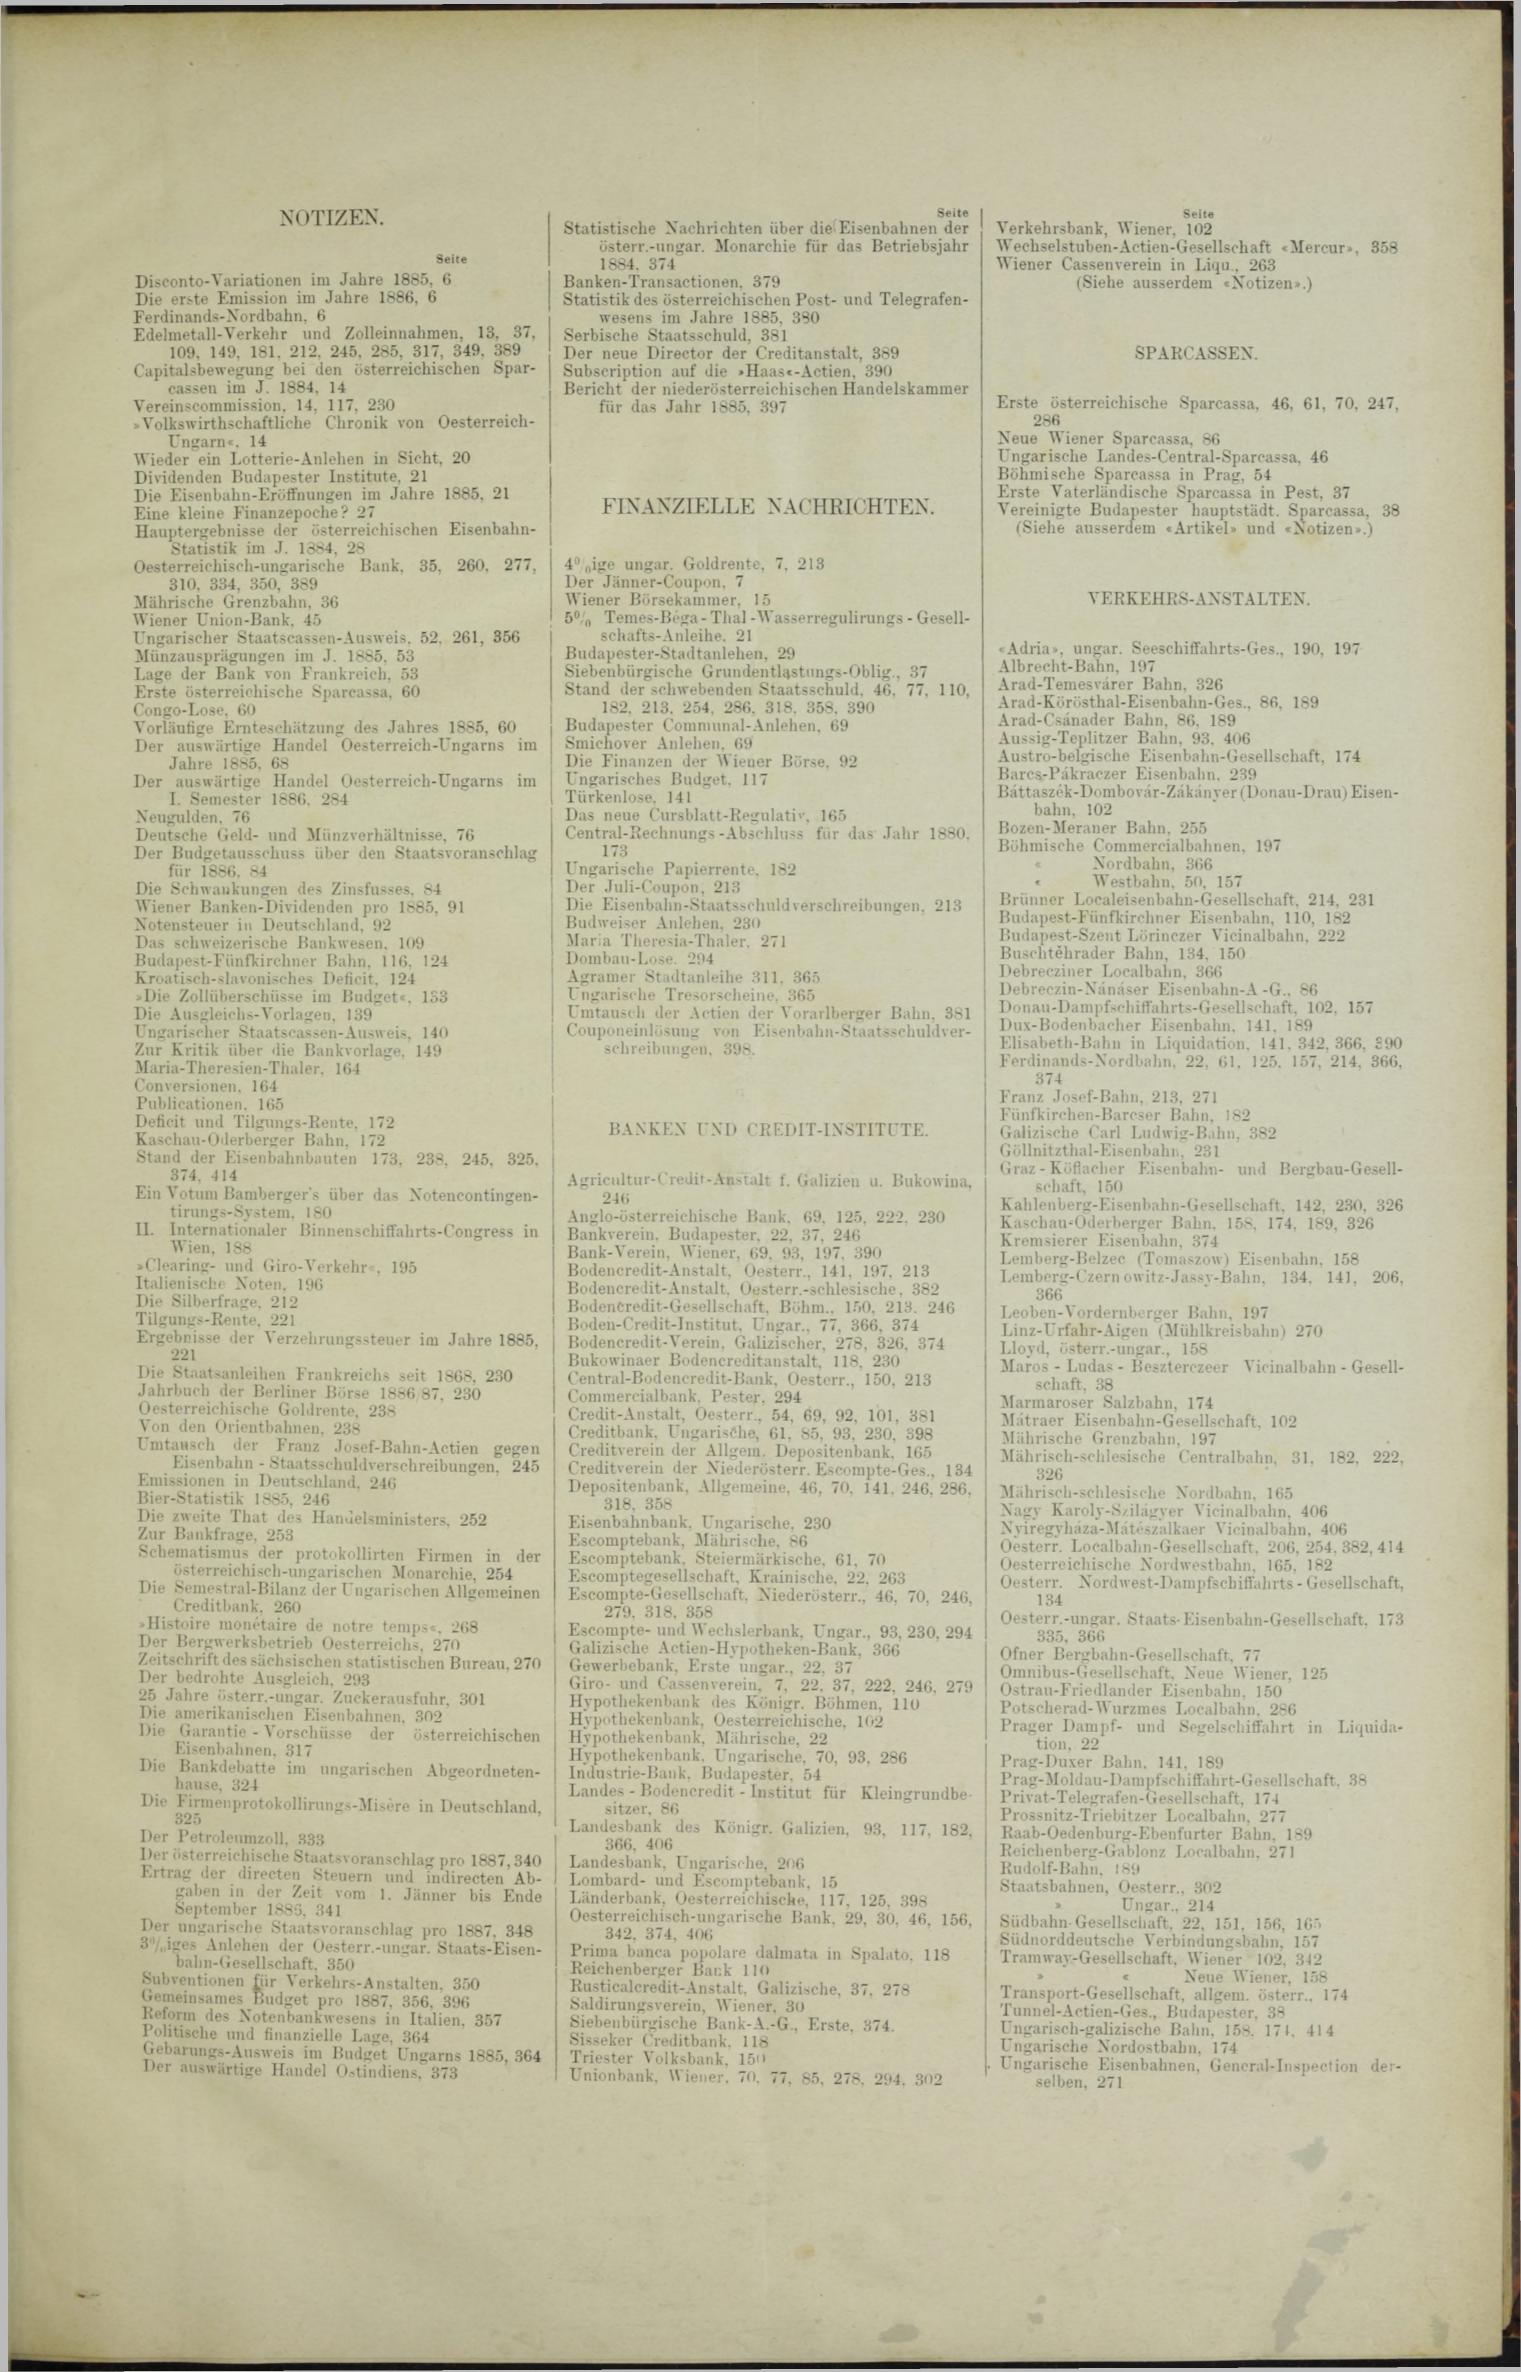 Der Tresor 14.01.1886 - Seite 11